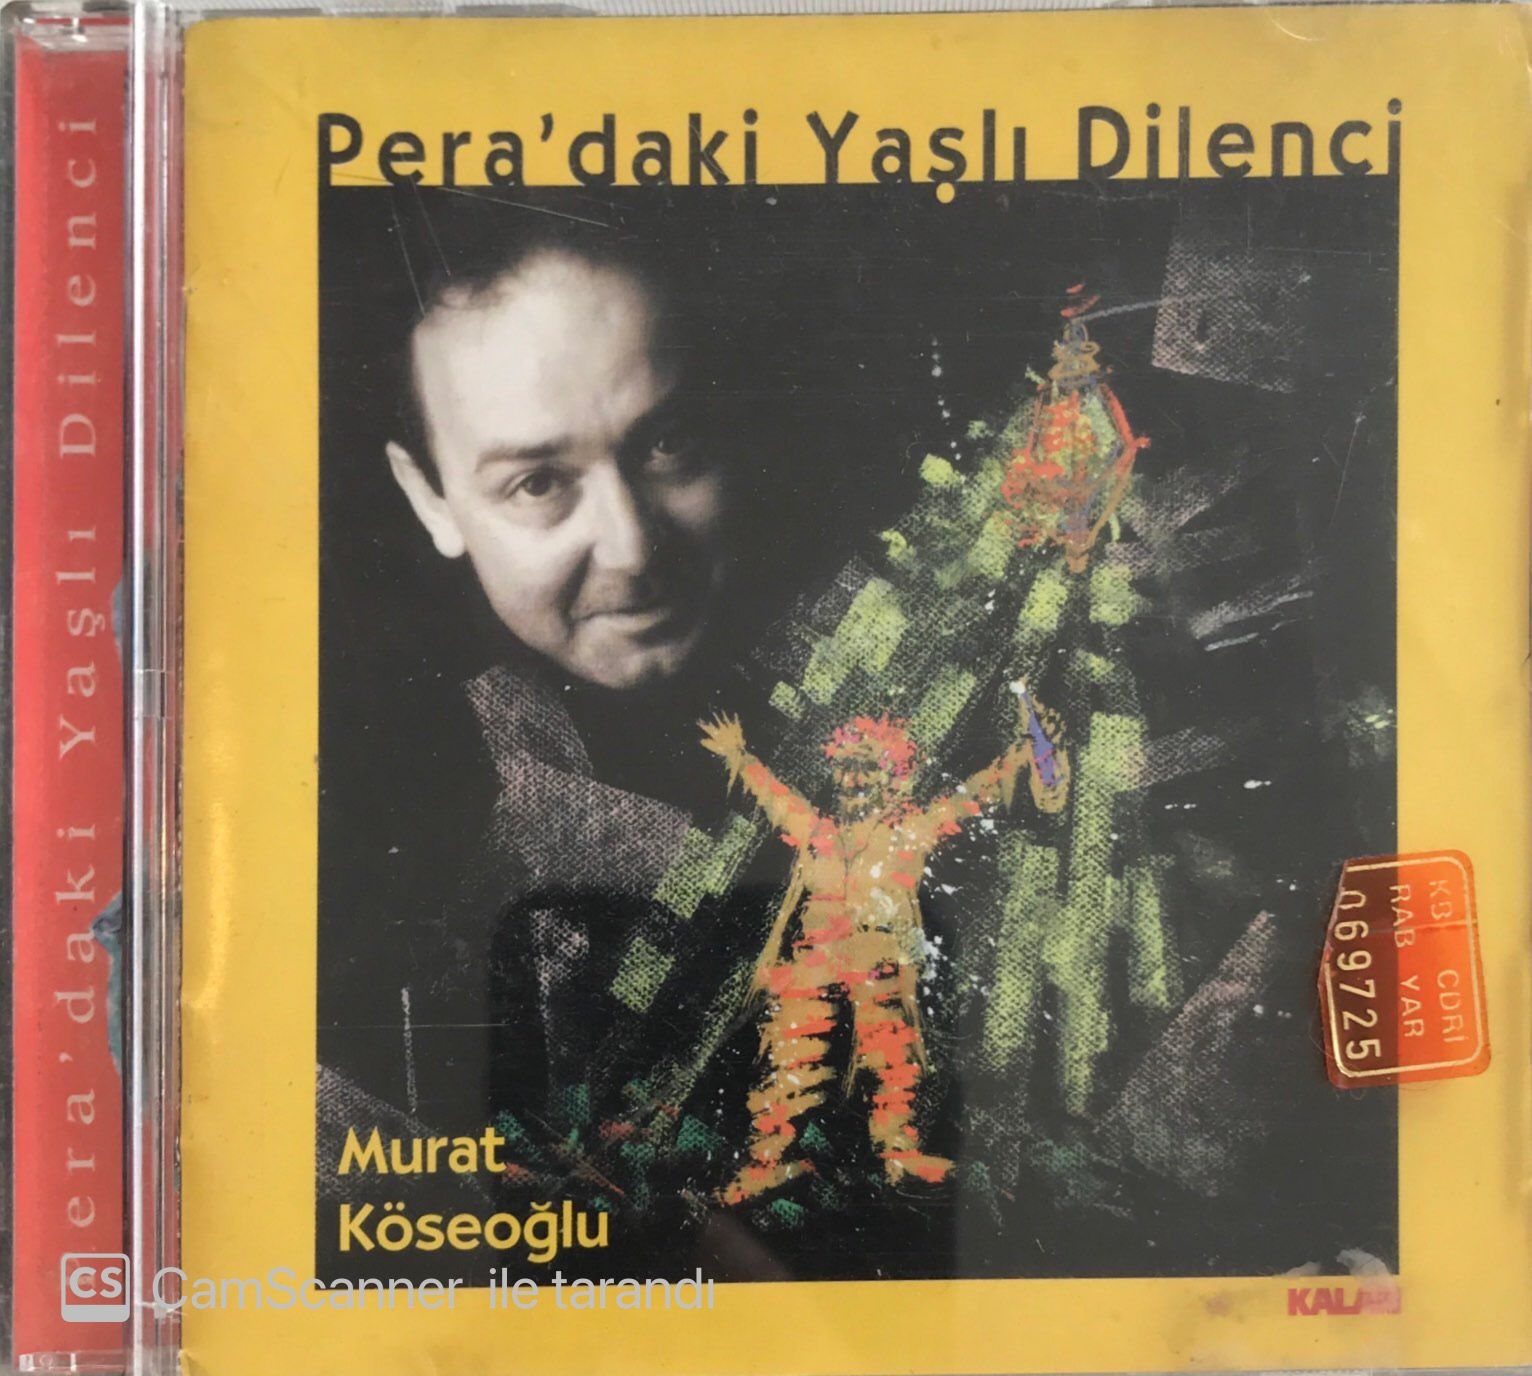 Murat Köseoğlu - Pera'daki Yaşlı Dilenci CD